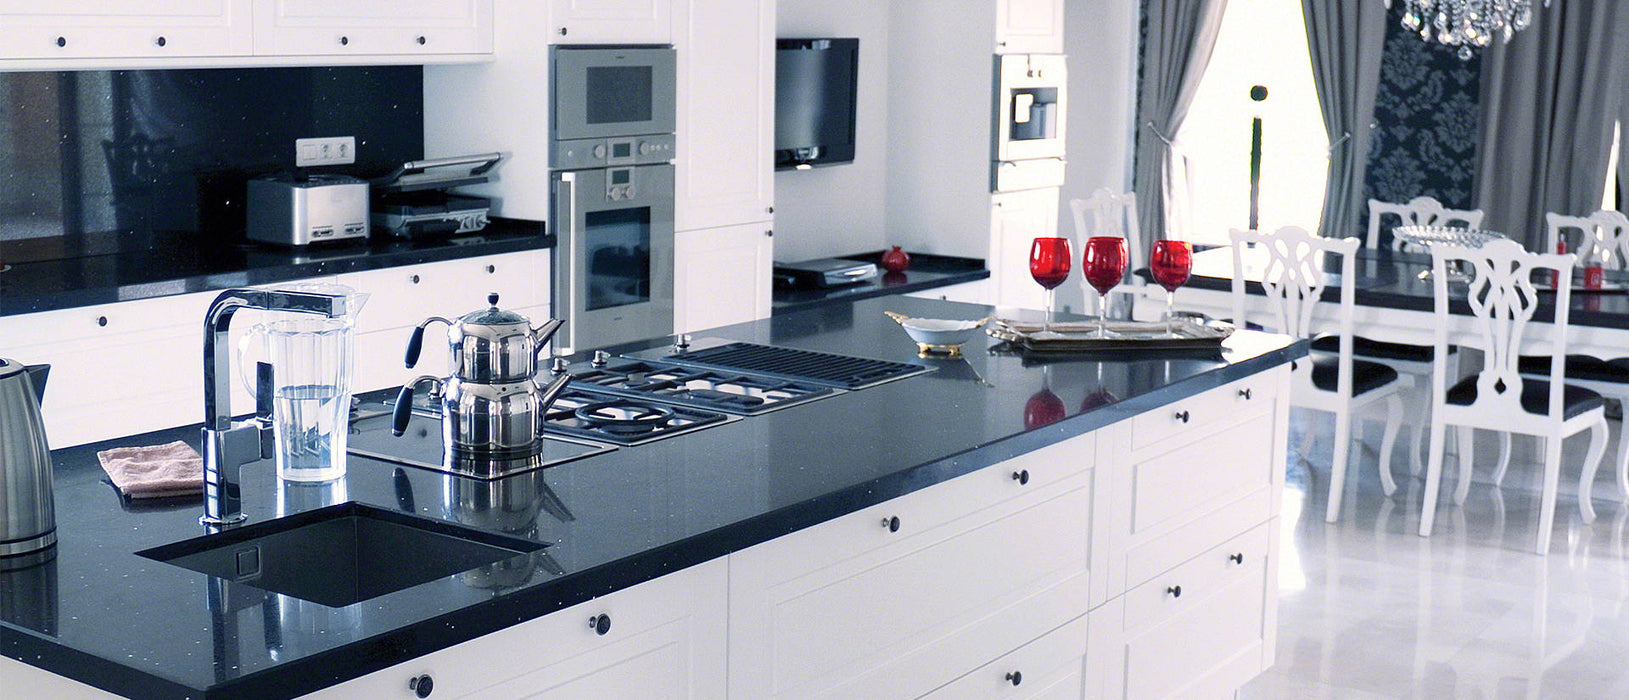 Sparkling Black quartz countertop kitchen scene